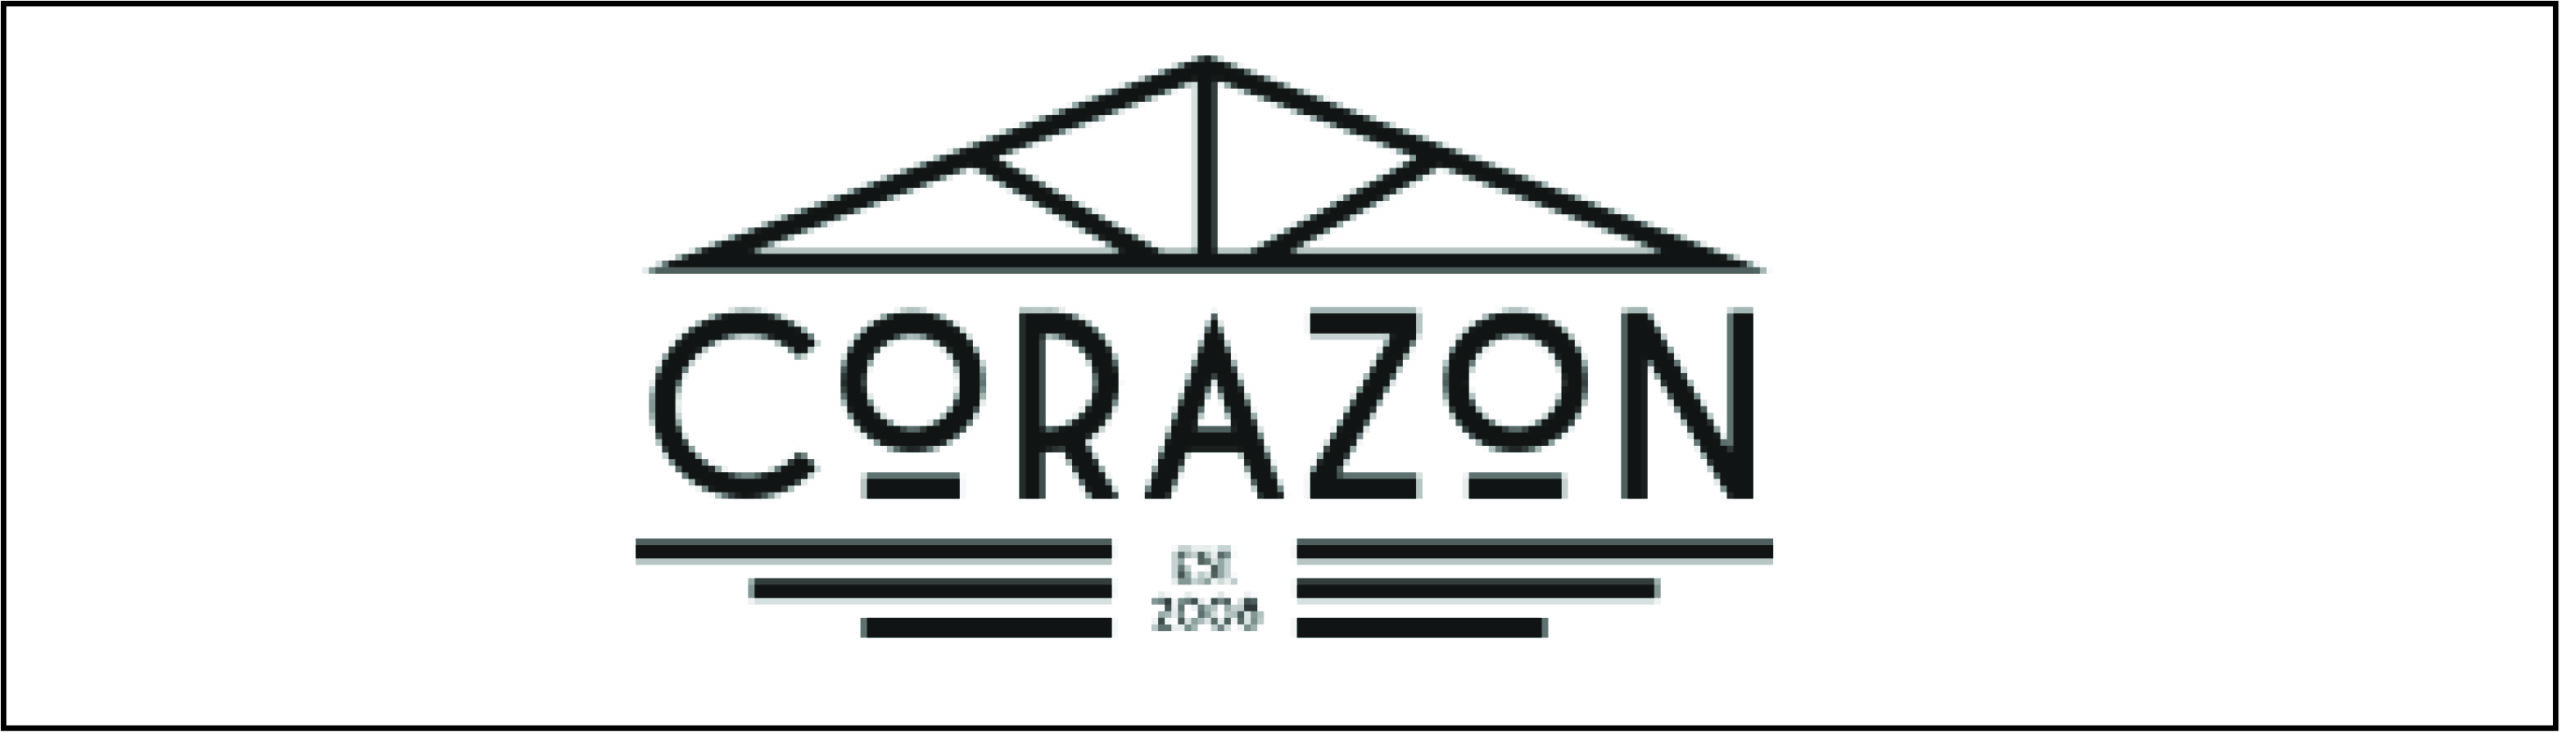 Strandpaviljoen Corazon review Pion horeca & Promotie bergen op zoom